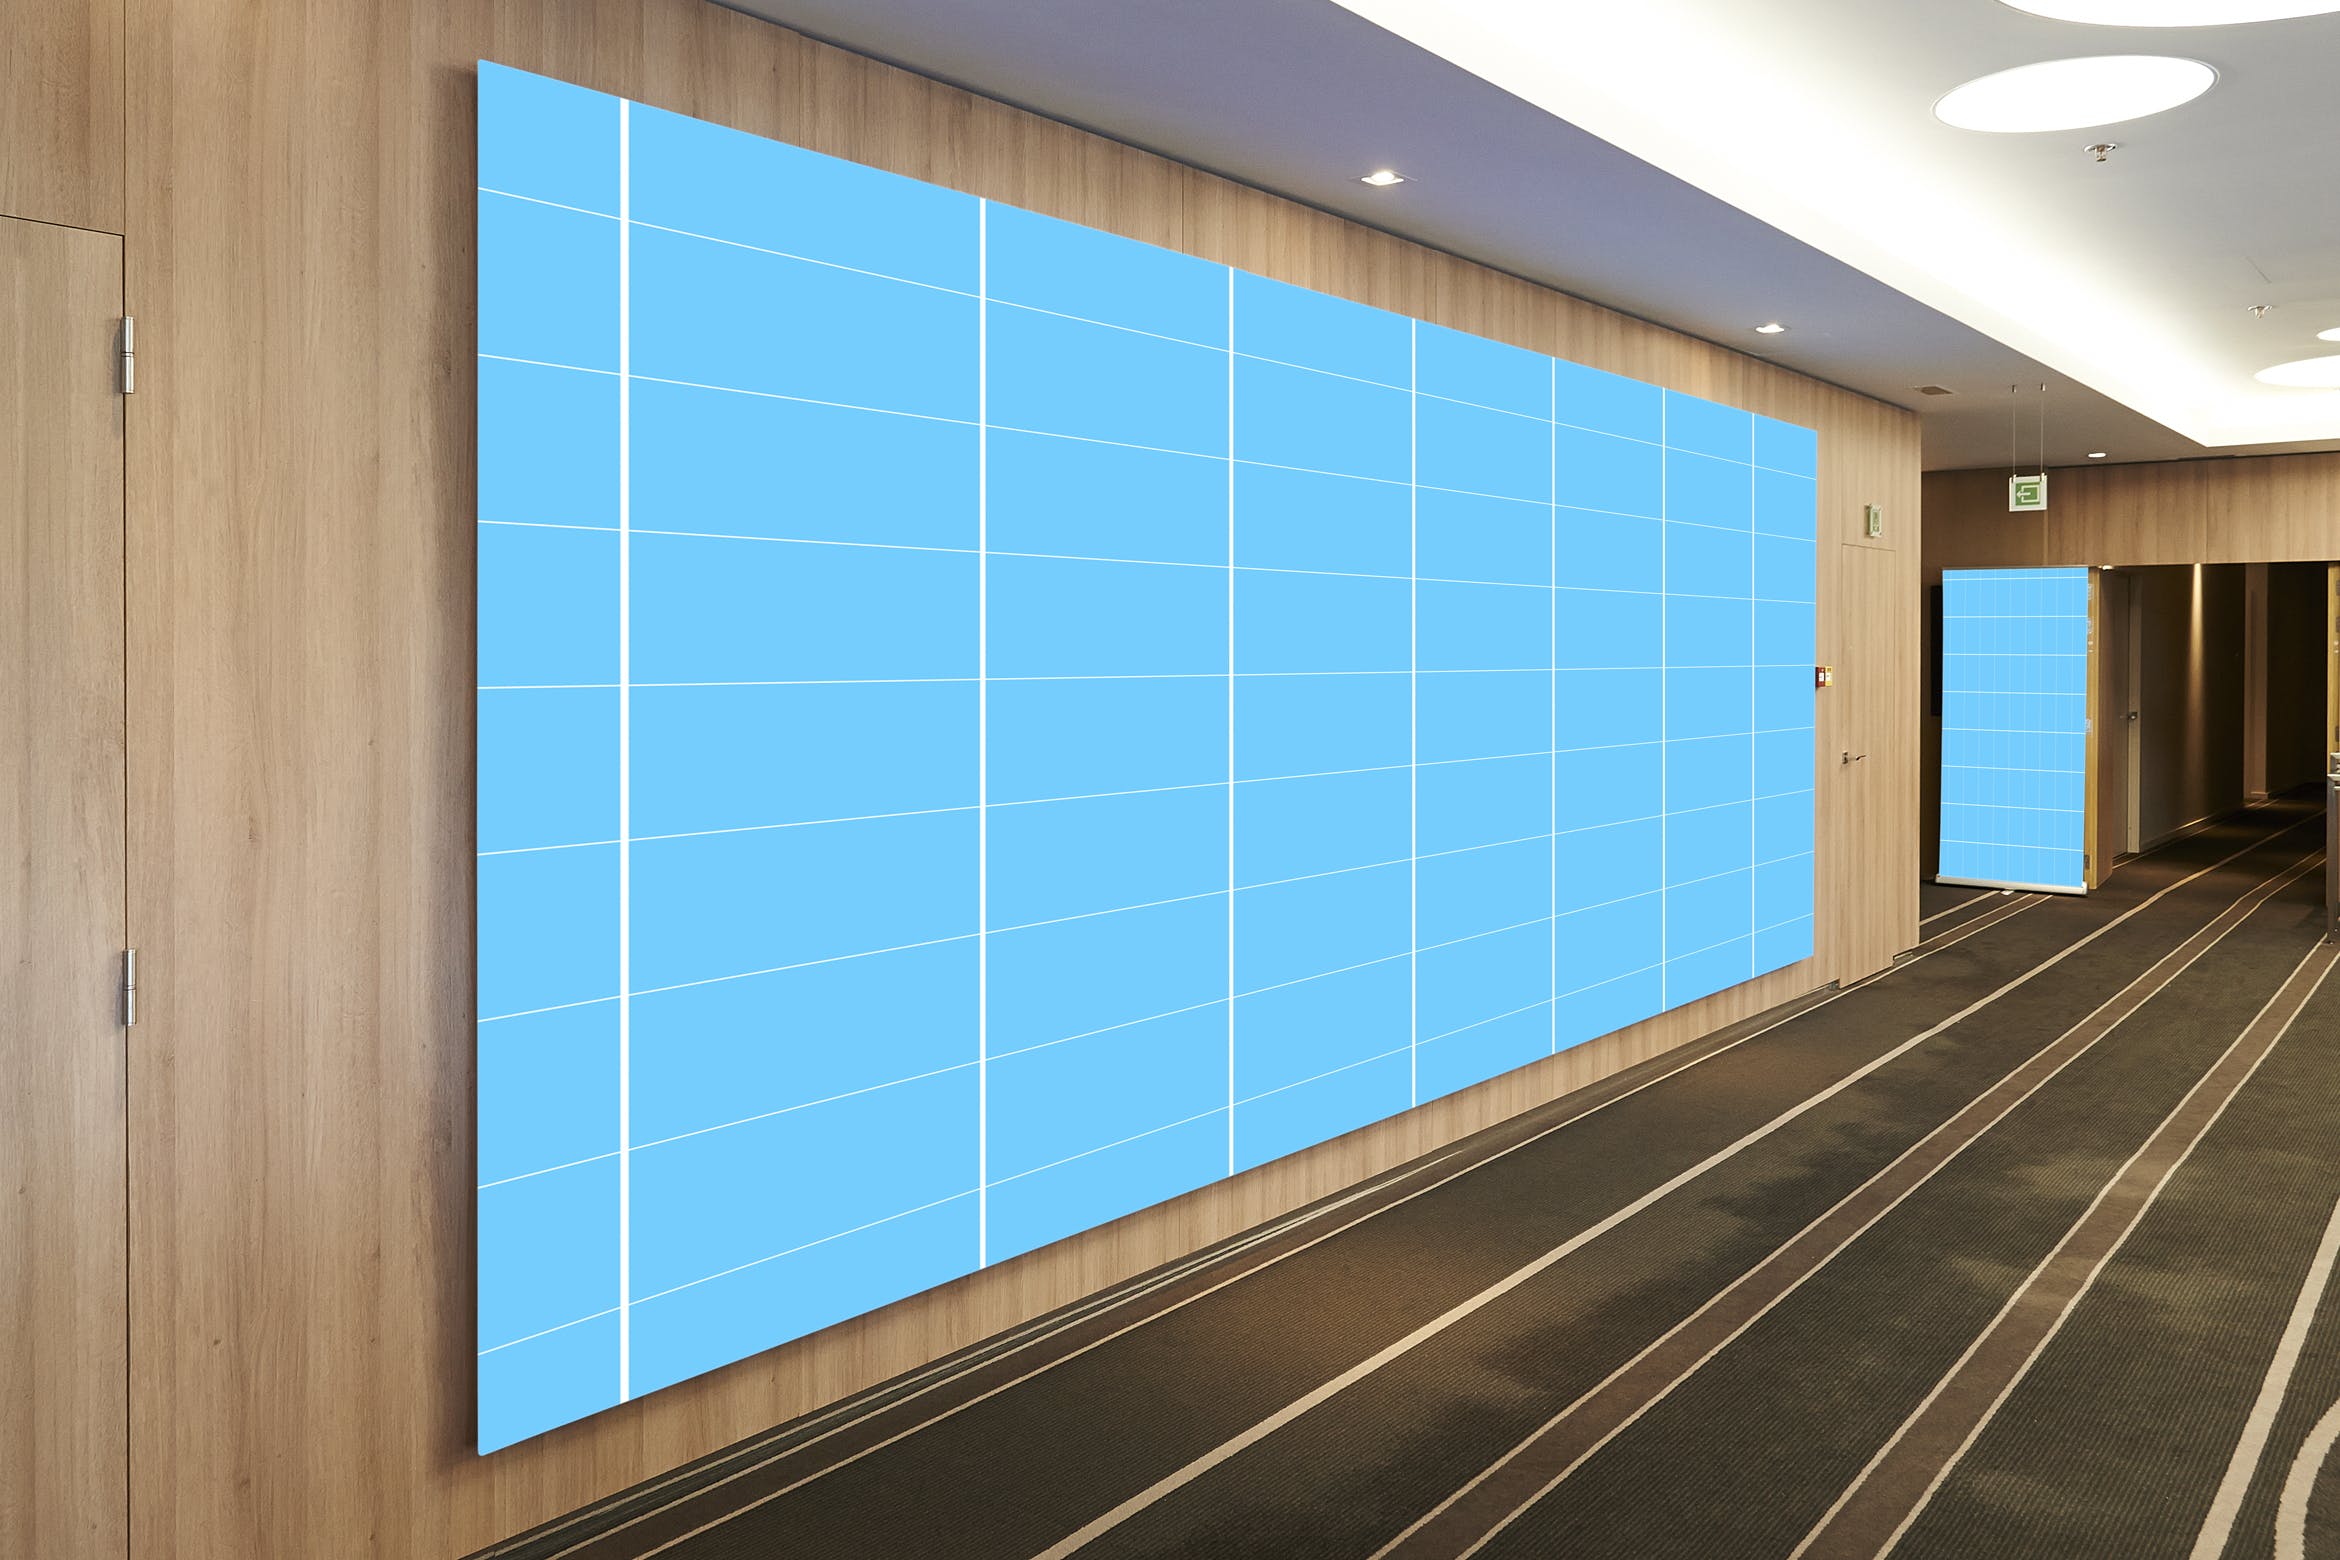 会议厅巨无霸广告牌样机第一素材精选模板 Conference_Hall_Frame-Mockup插图